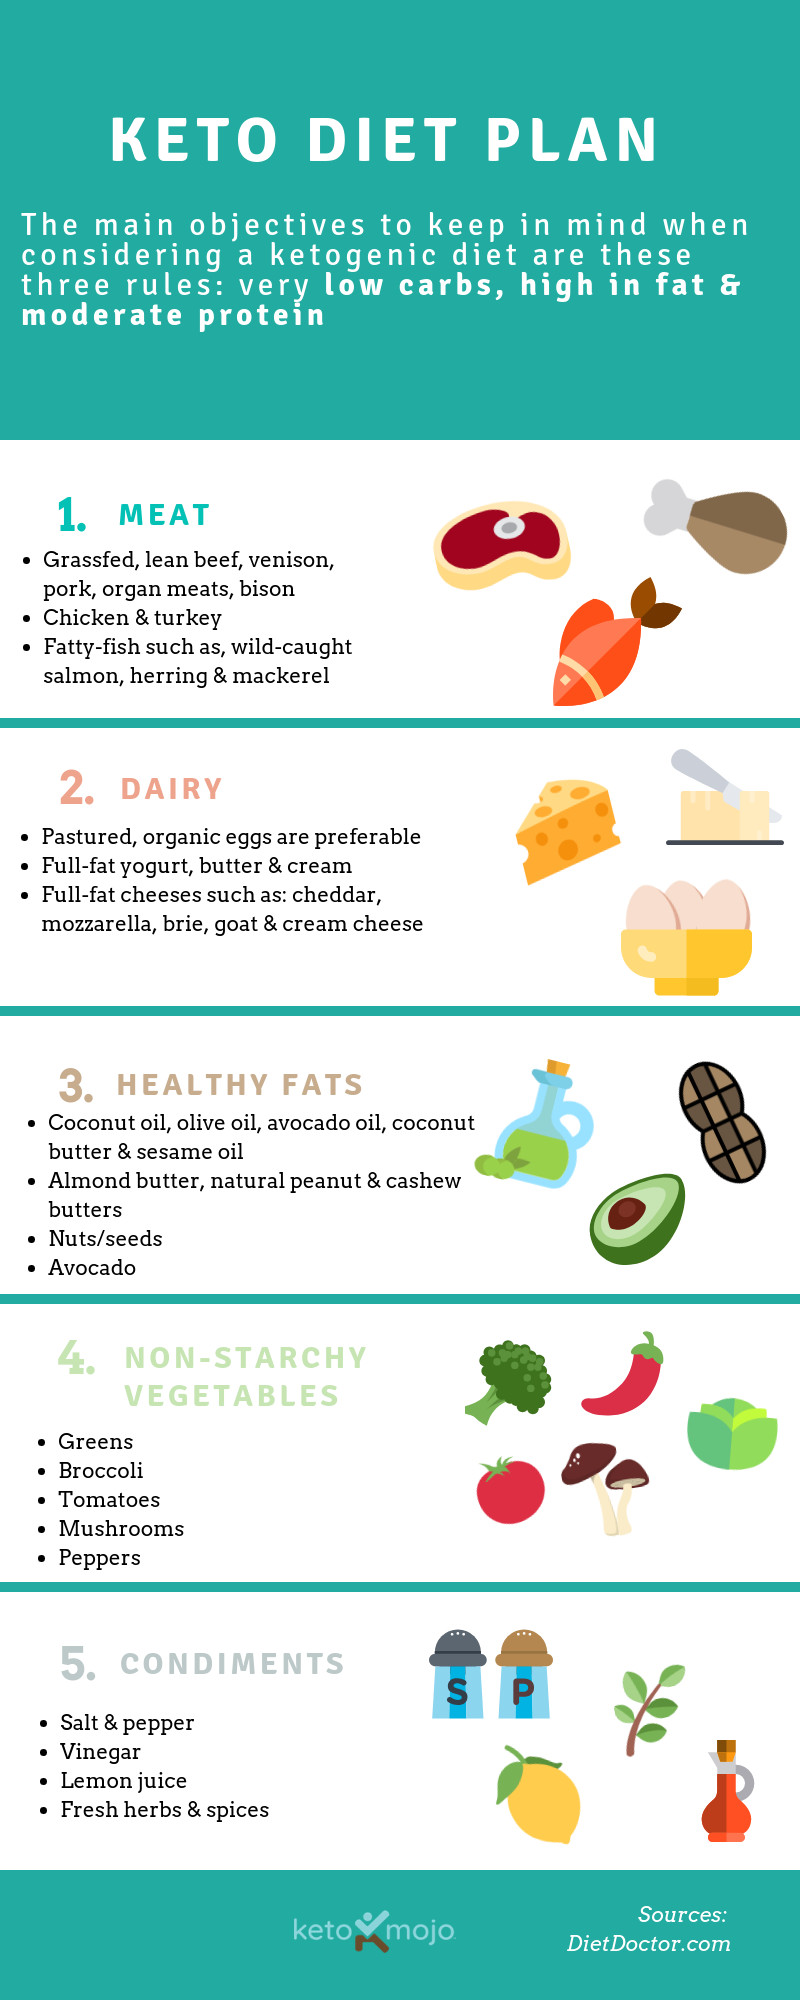 How To Start Keto For Beginners
 Keto Diet Plan For Beginners